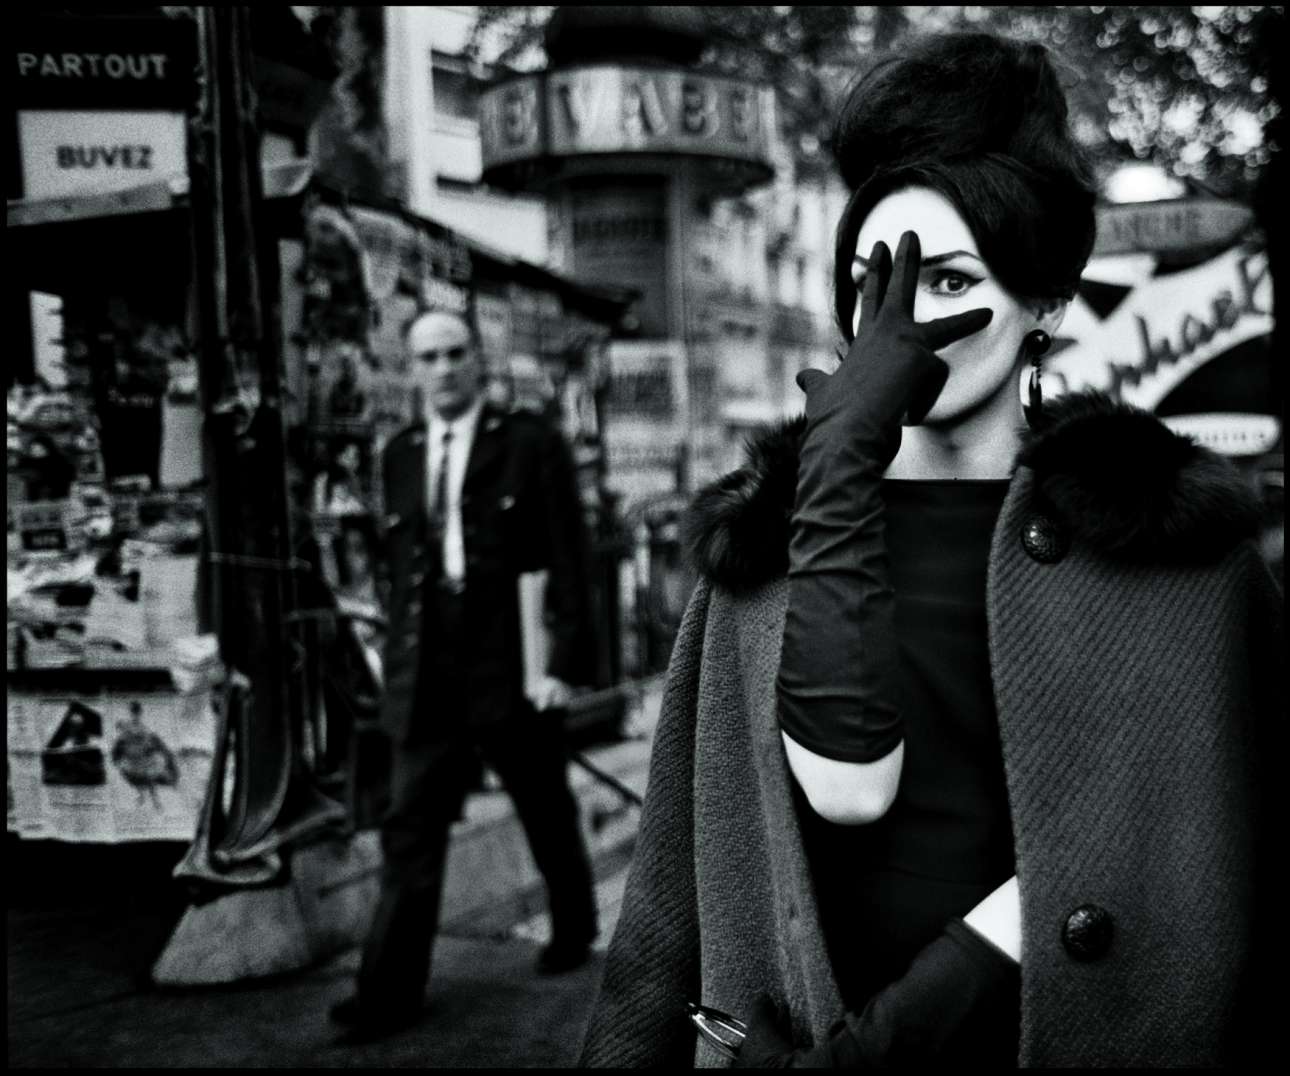 «Νανά», Παρίσι, 1961.  Ο σουηδός φωτογράφος Στρόμχολμ ξεκίνησε να δουλεύει στο Παρίσι τη δεκαετία του 1950. «Κάθε βράδυ έπαιρνα την πίπα μου, την παλιά μου Leica, μερικά ρολά Tri-X και τα κακά μου γαλλικά και πήγαινα στη μπρασερί στην Place Blanche. Ολοι γνώριζαν τι έκανα. Ποτέ δεν φωτογράφισα στα κρυφά. Δεν χρησιμοποιούσα φλας αλλά αντιθέτως αξιοποιούσα το διαθέσιμο, συχνά νέον, φως που υπήρχε» λέει ο φωτογράφος, διάσημος για τα υπέροχα ασπρόμαυρα πορτρέτα του